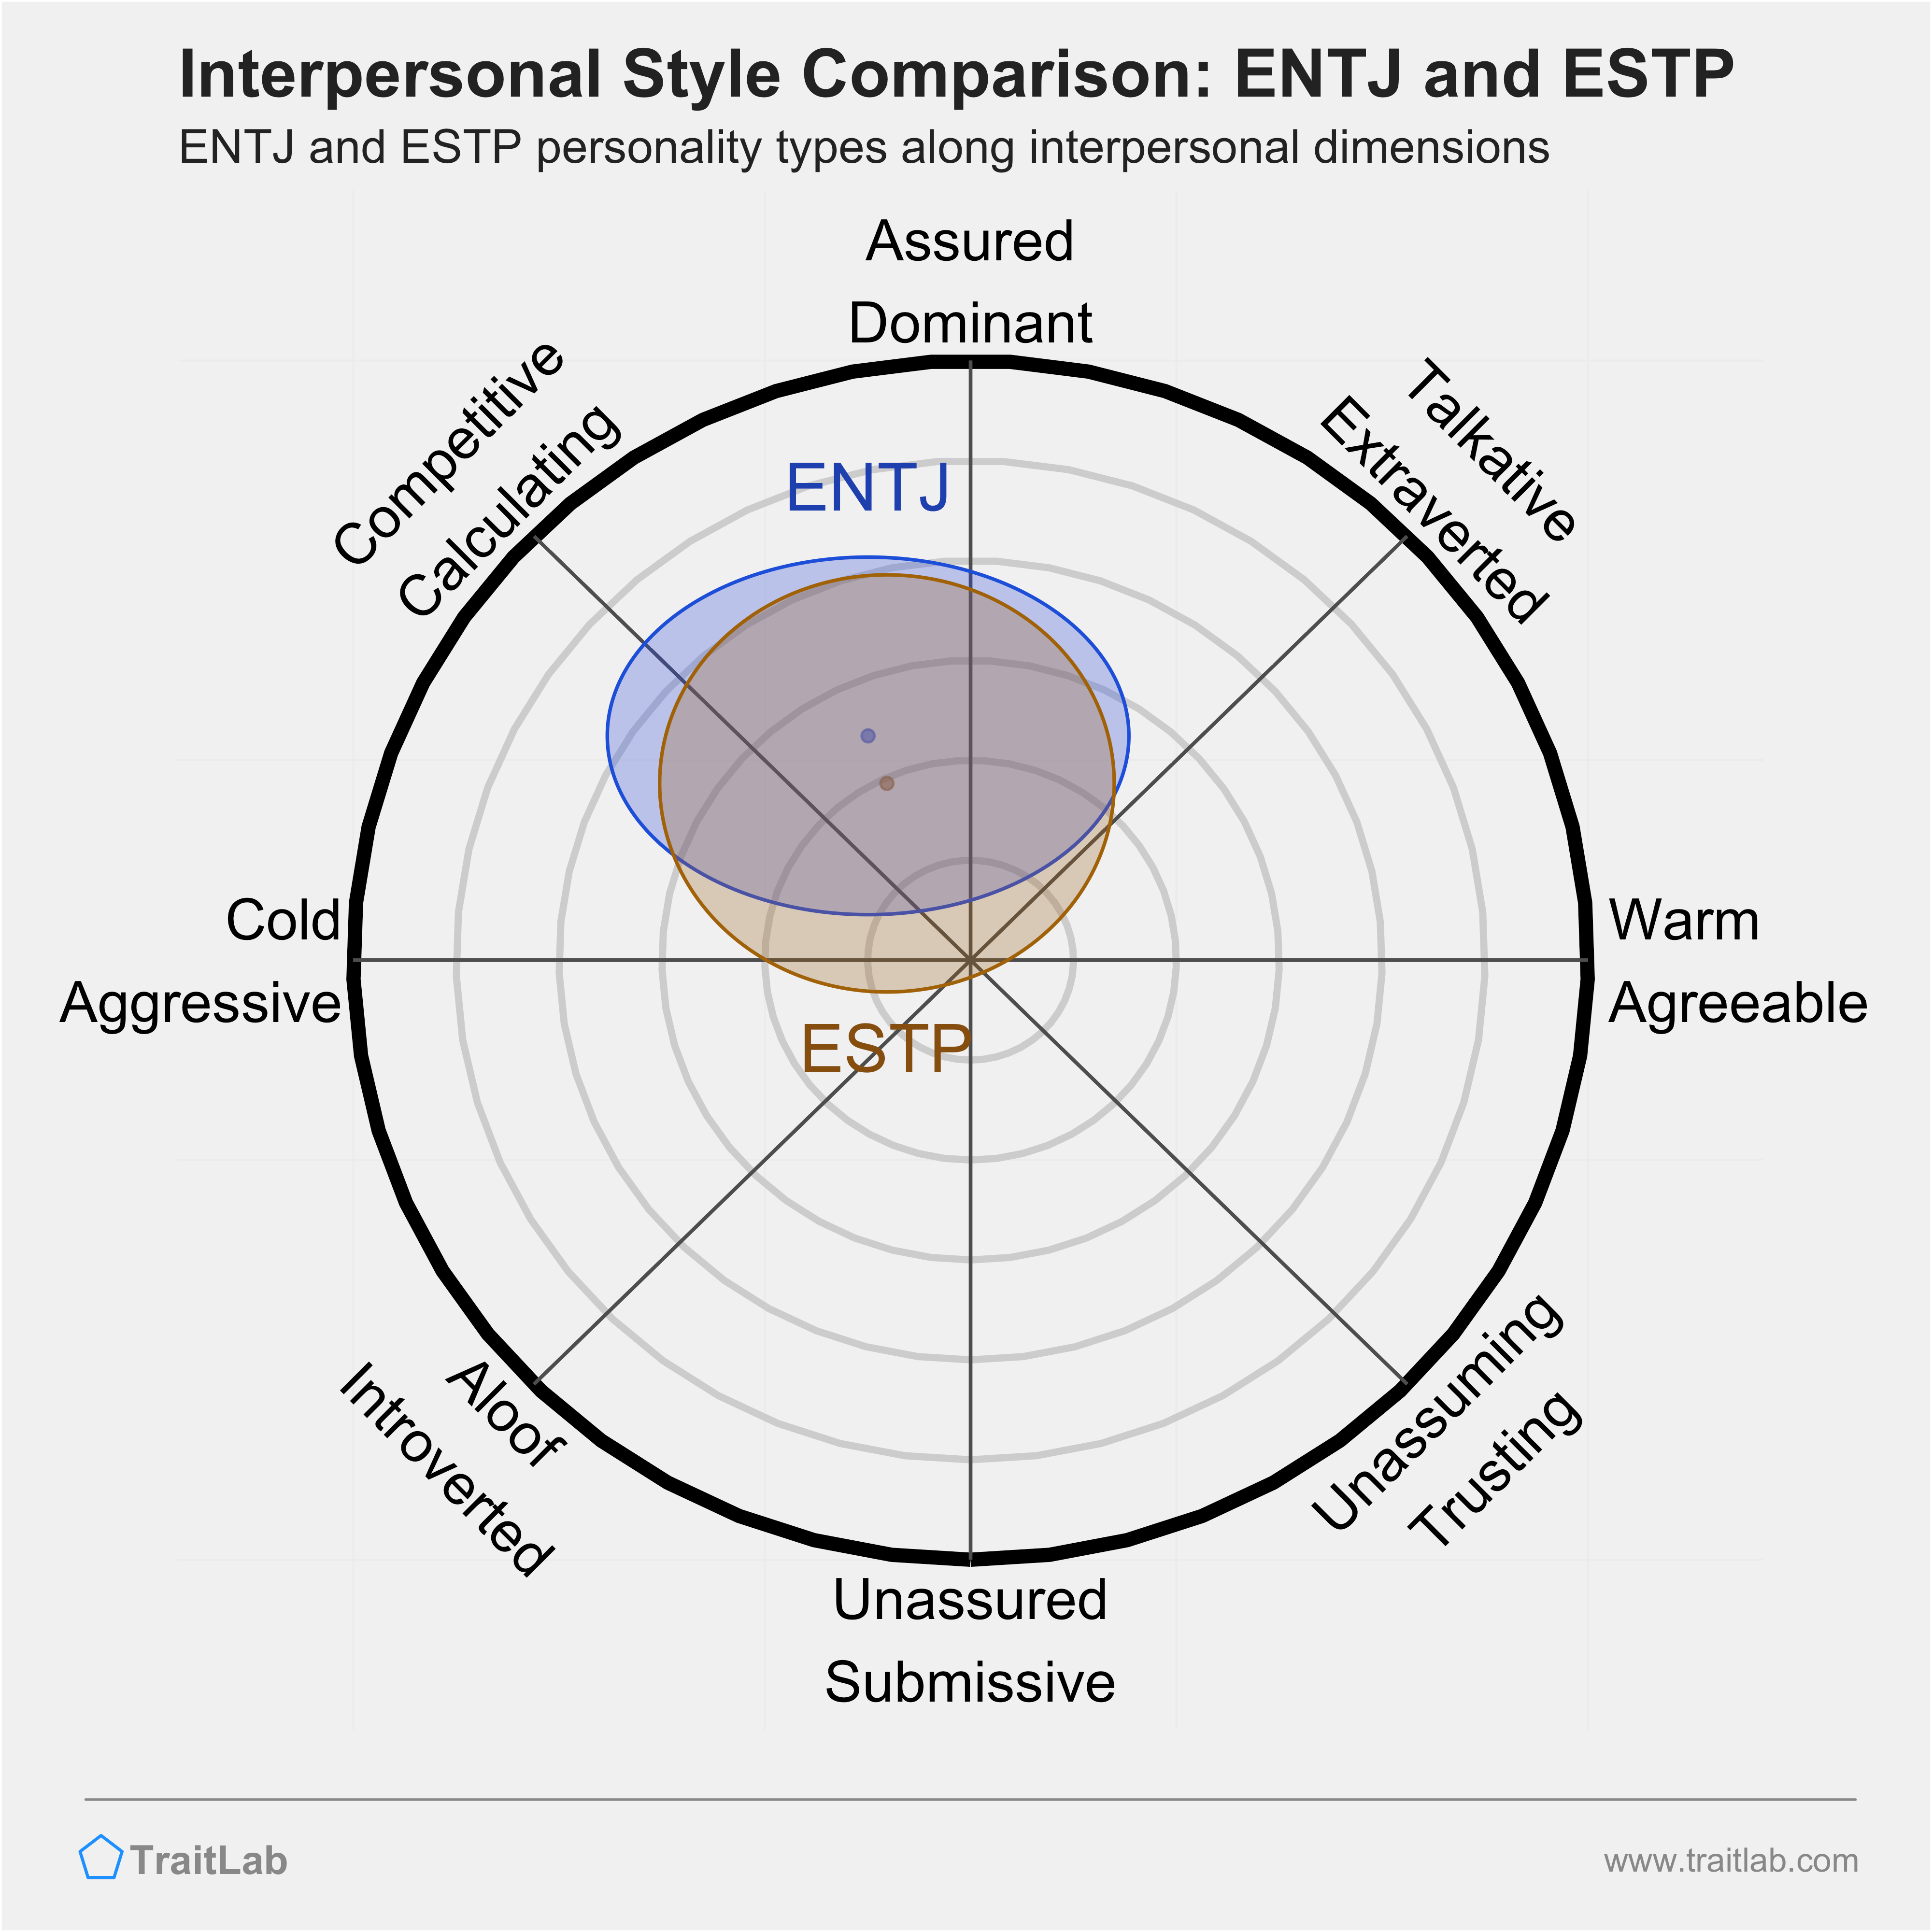 ENTJ and ESTP comparison across interpersonal dimensions